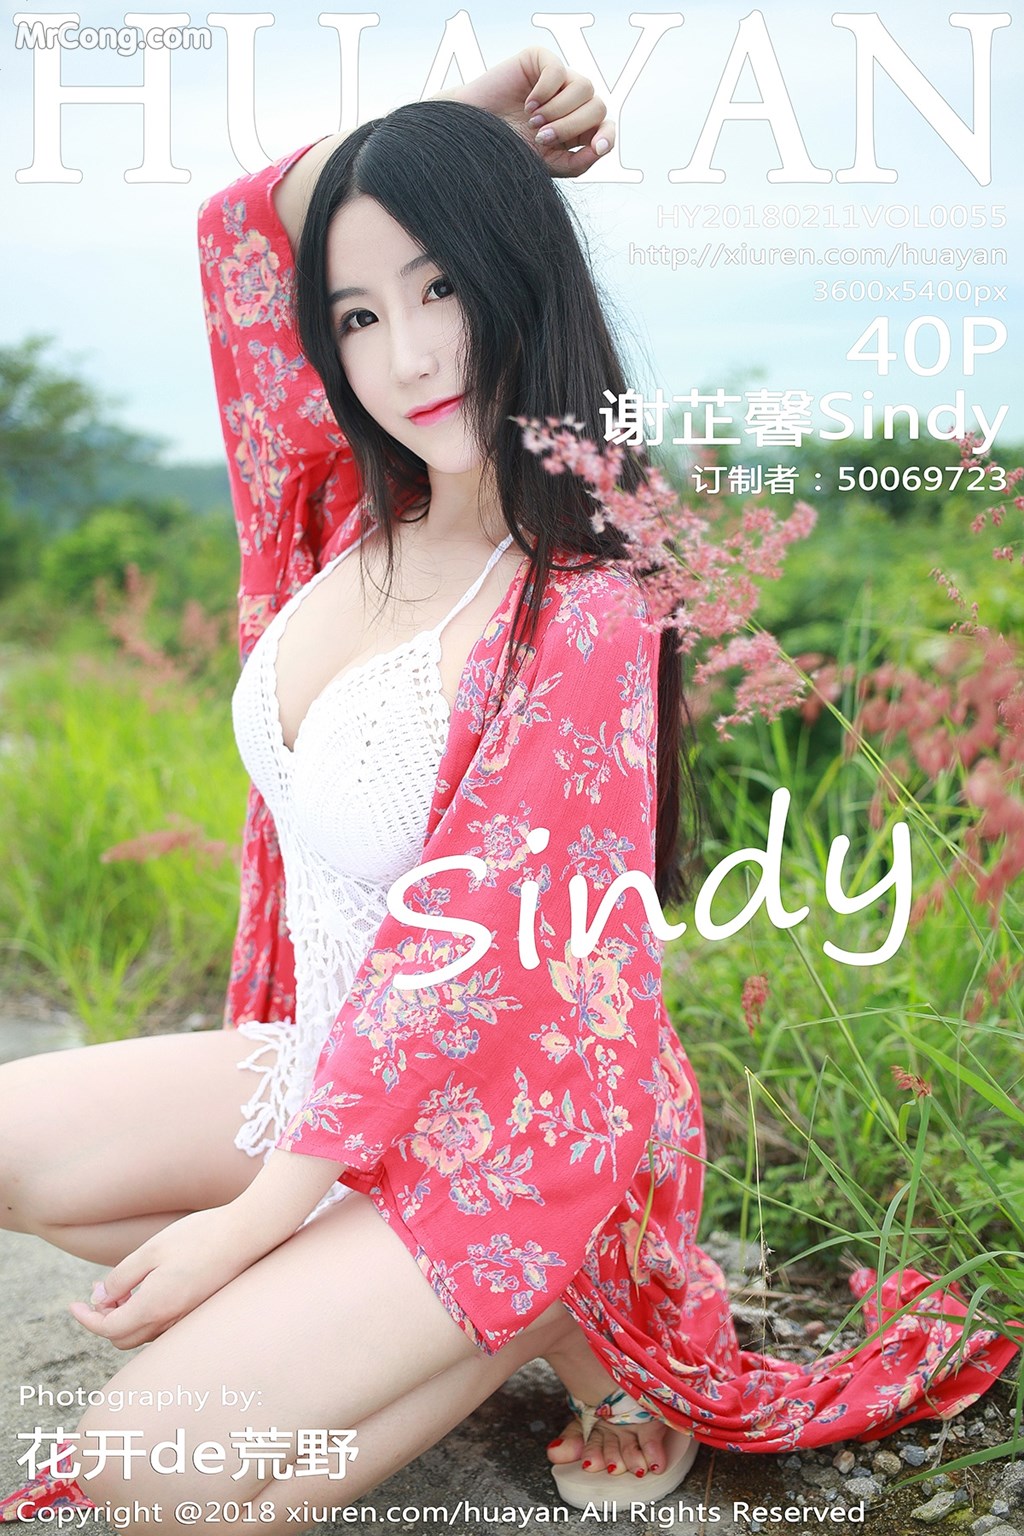 HuaYan Vol.055: Model Sindy (谢芷馨) (41 photos) photo 1-0